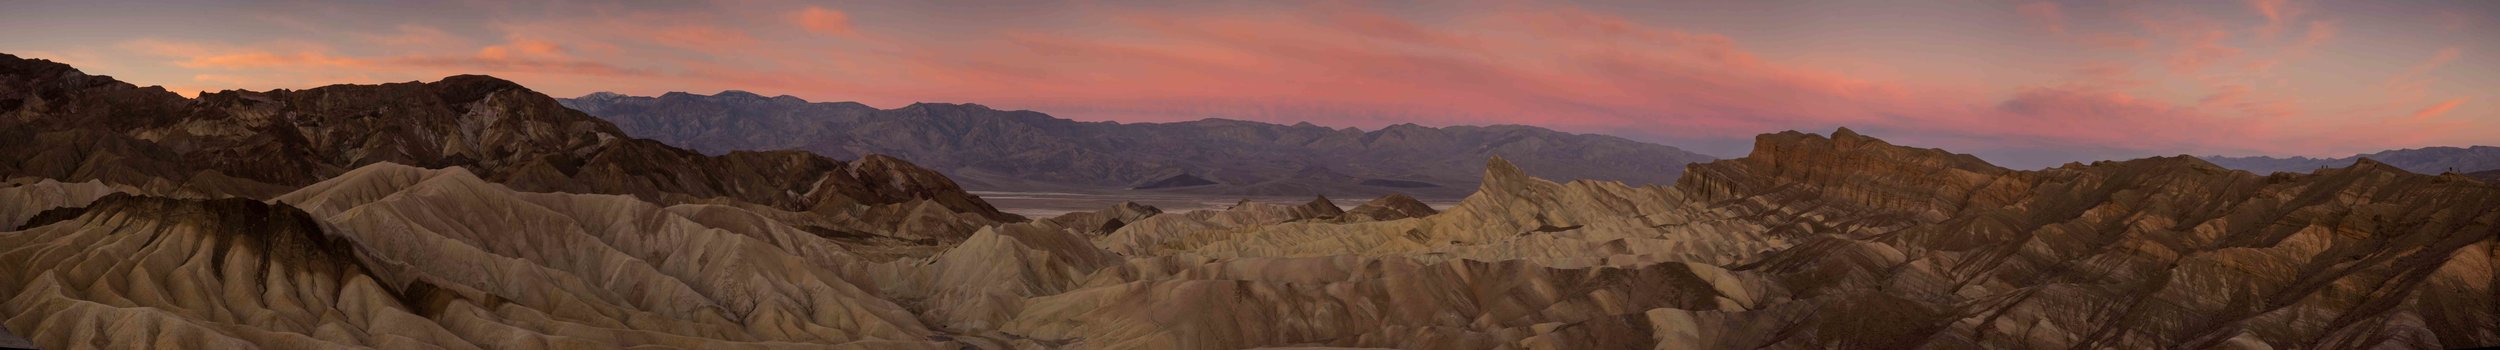 Death Valley 3.jpg